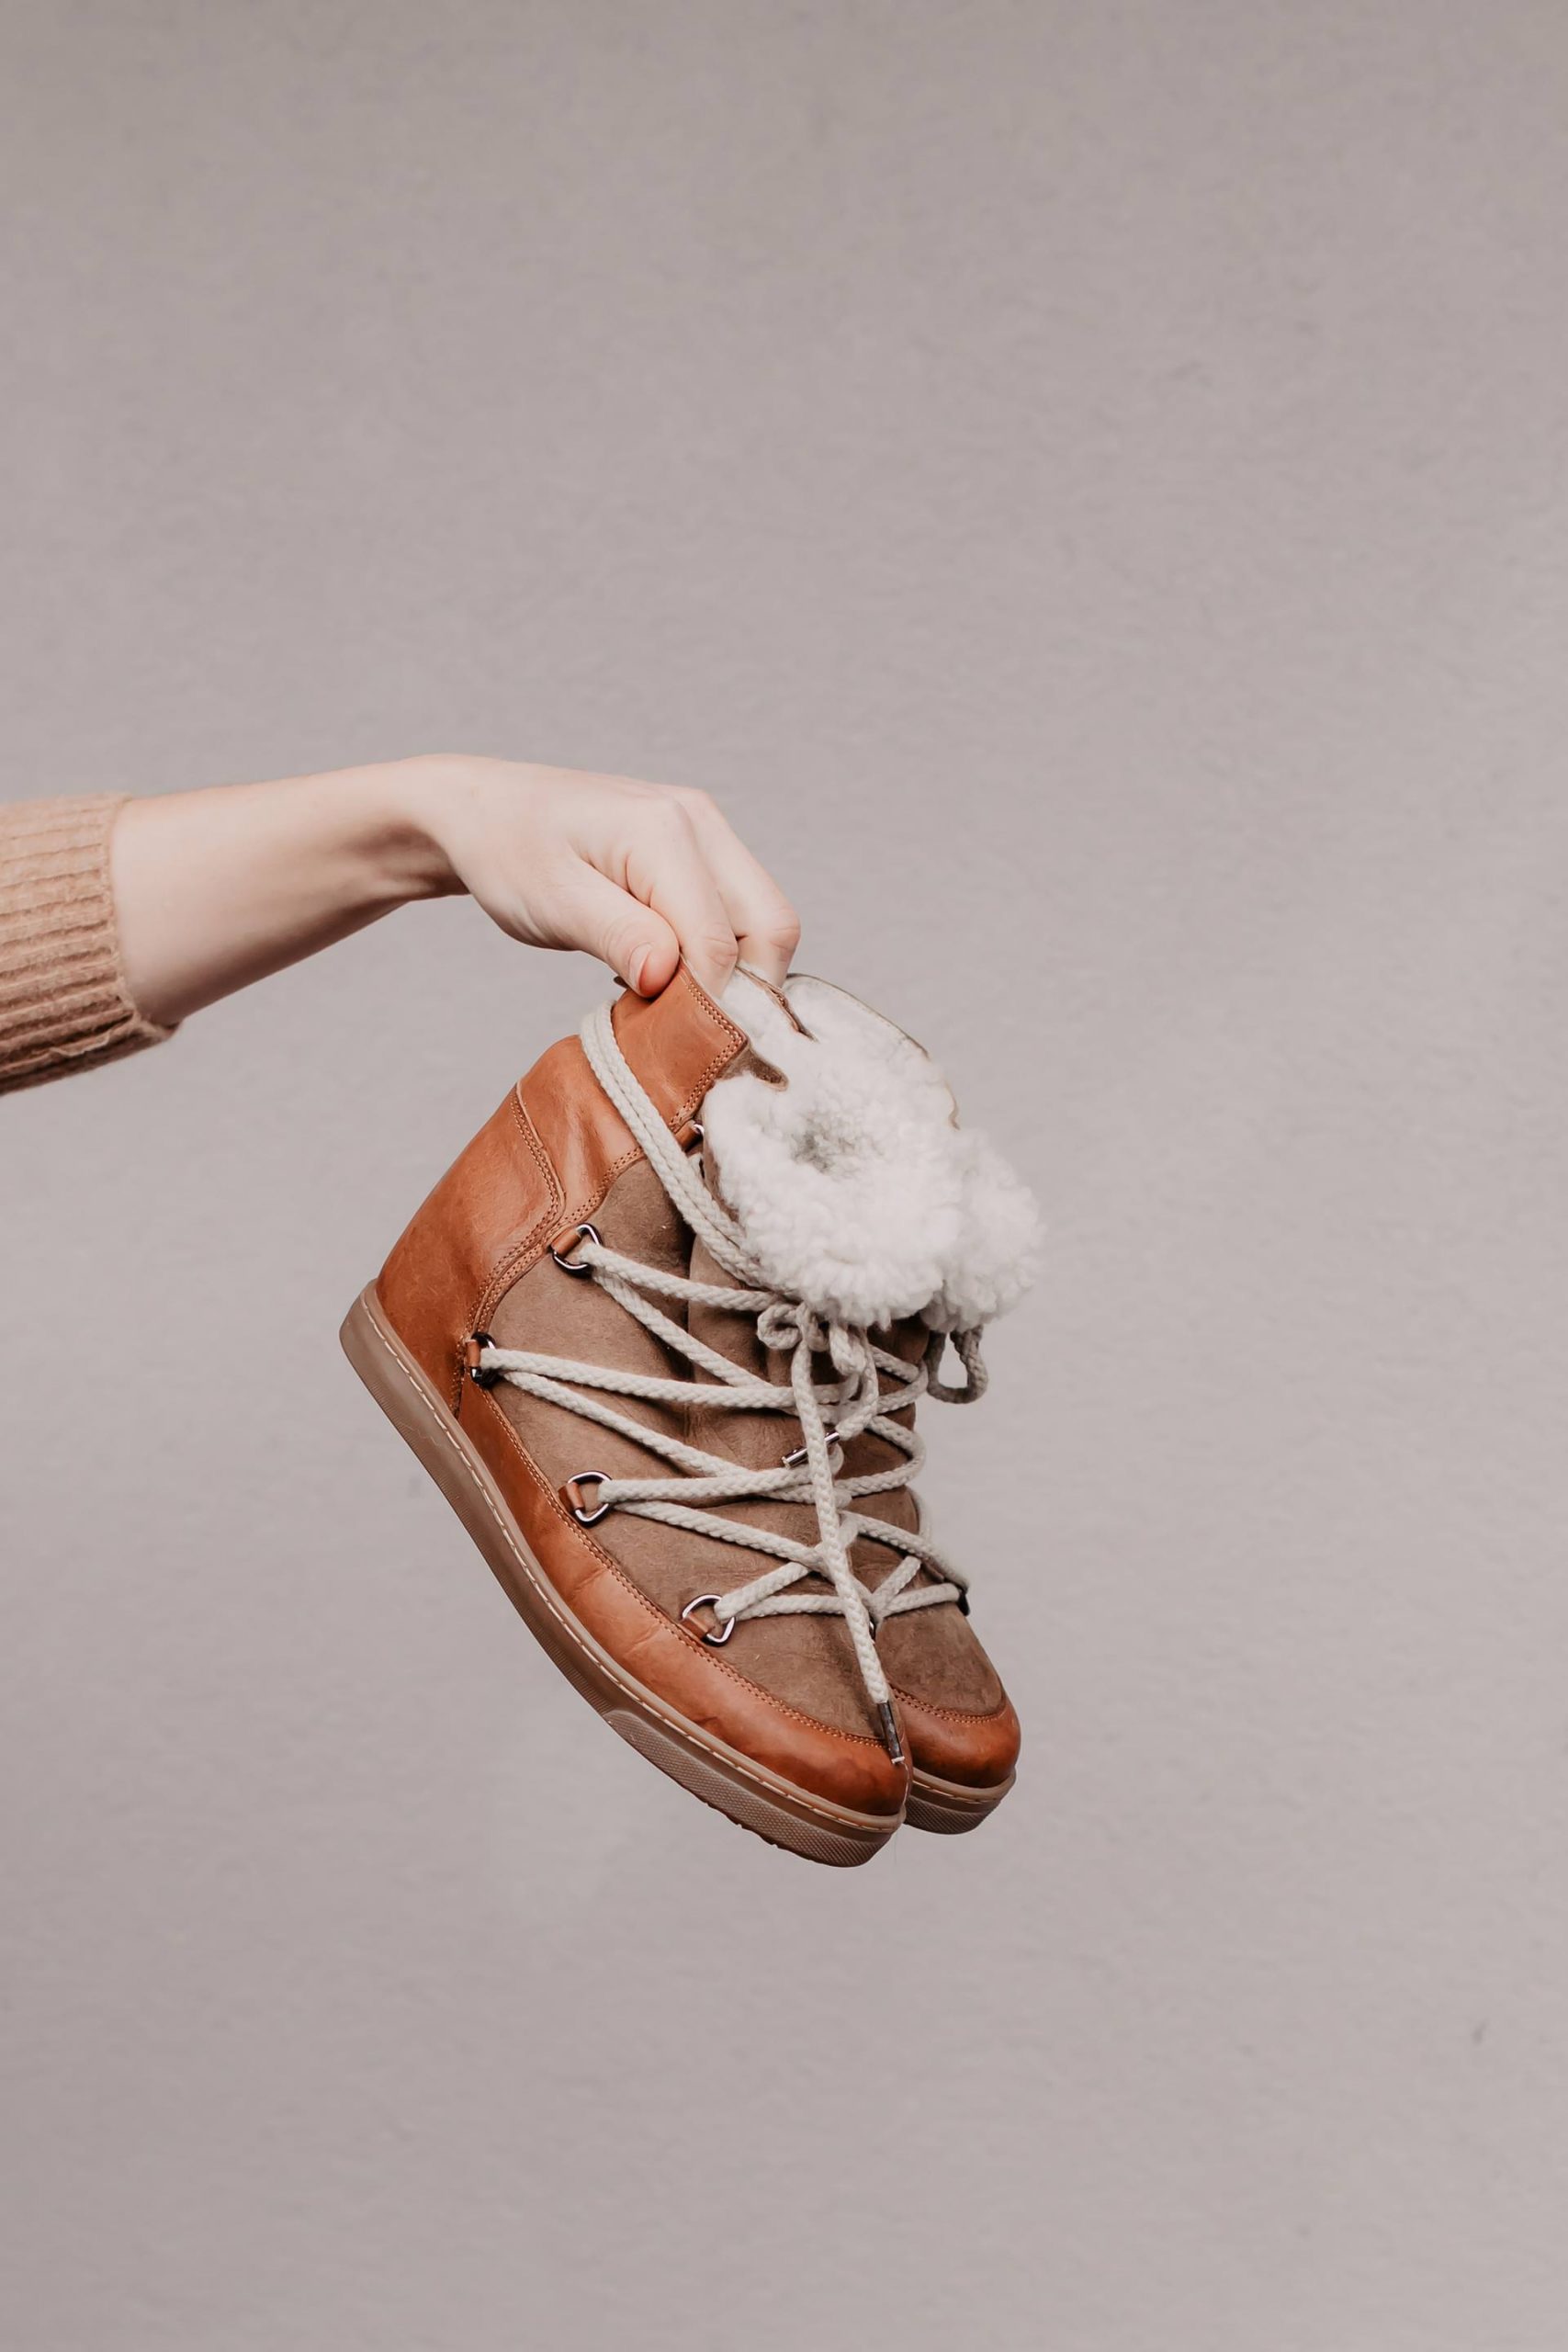 Warme Schuhe für den Winter gesucht? Die Isabel Marant Nowles Boots sind der perfekte Winterbegleiter und noch dazu absolut im Trend. Mehr zu meinen Lieblingsboots und passende Outfit-Ideen für den Winter gibt es jetzt am Modeblog www.whoismocca.com #isabelmarant